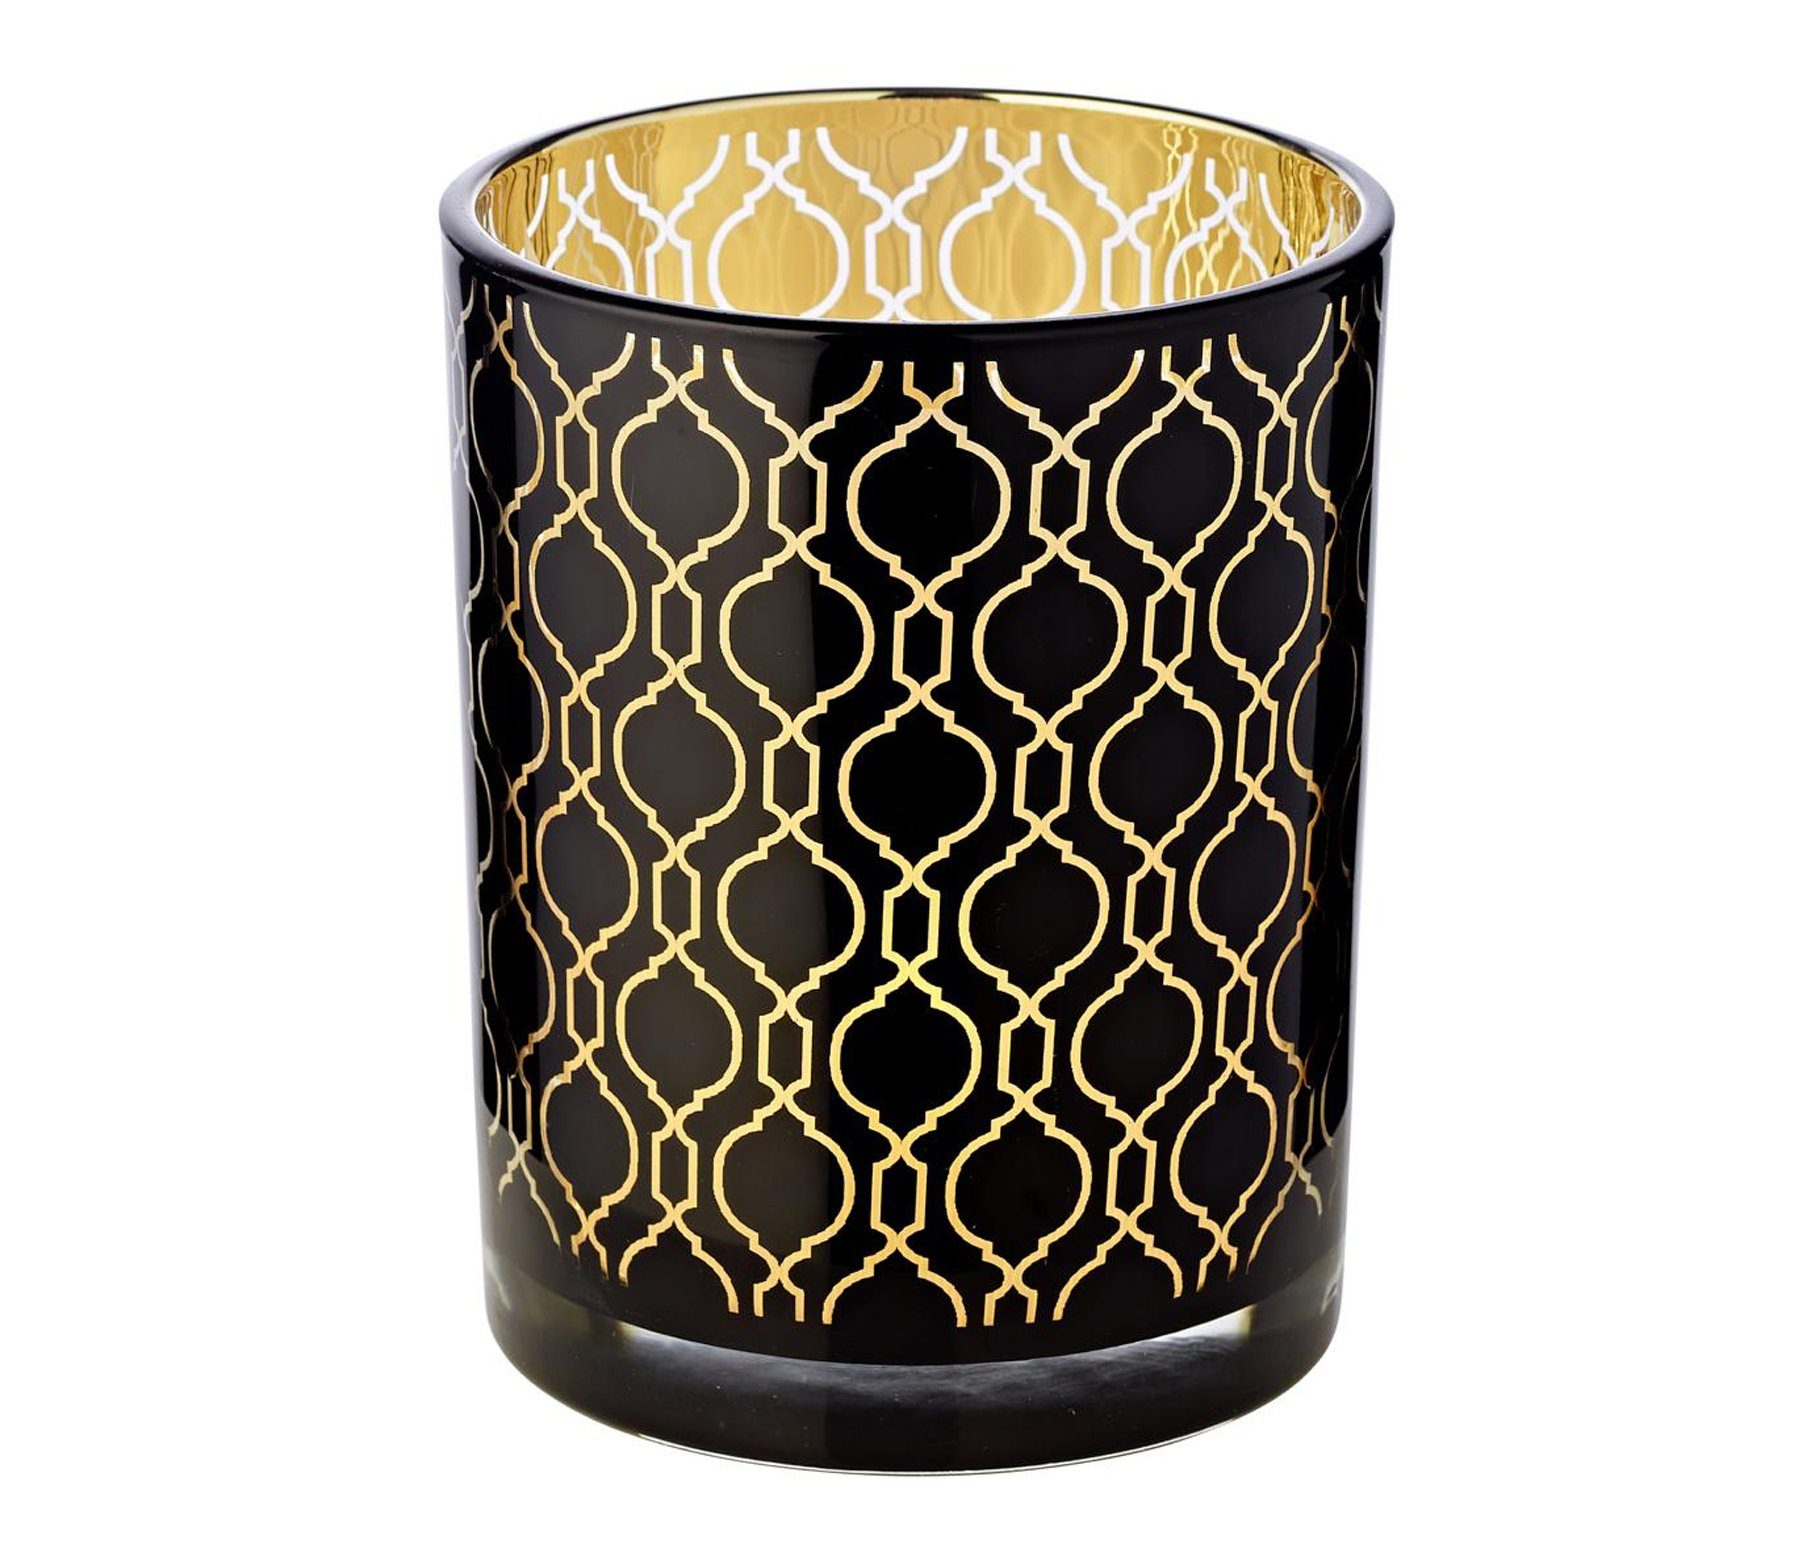 EDZARD Windlicht Raute, Kerzenglas mit Rauten-Motiv in Gold-Optik, Teelichtglas für Teelichter, Höhe 13 cm, Ø 10 cm